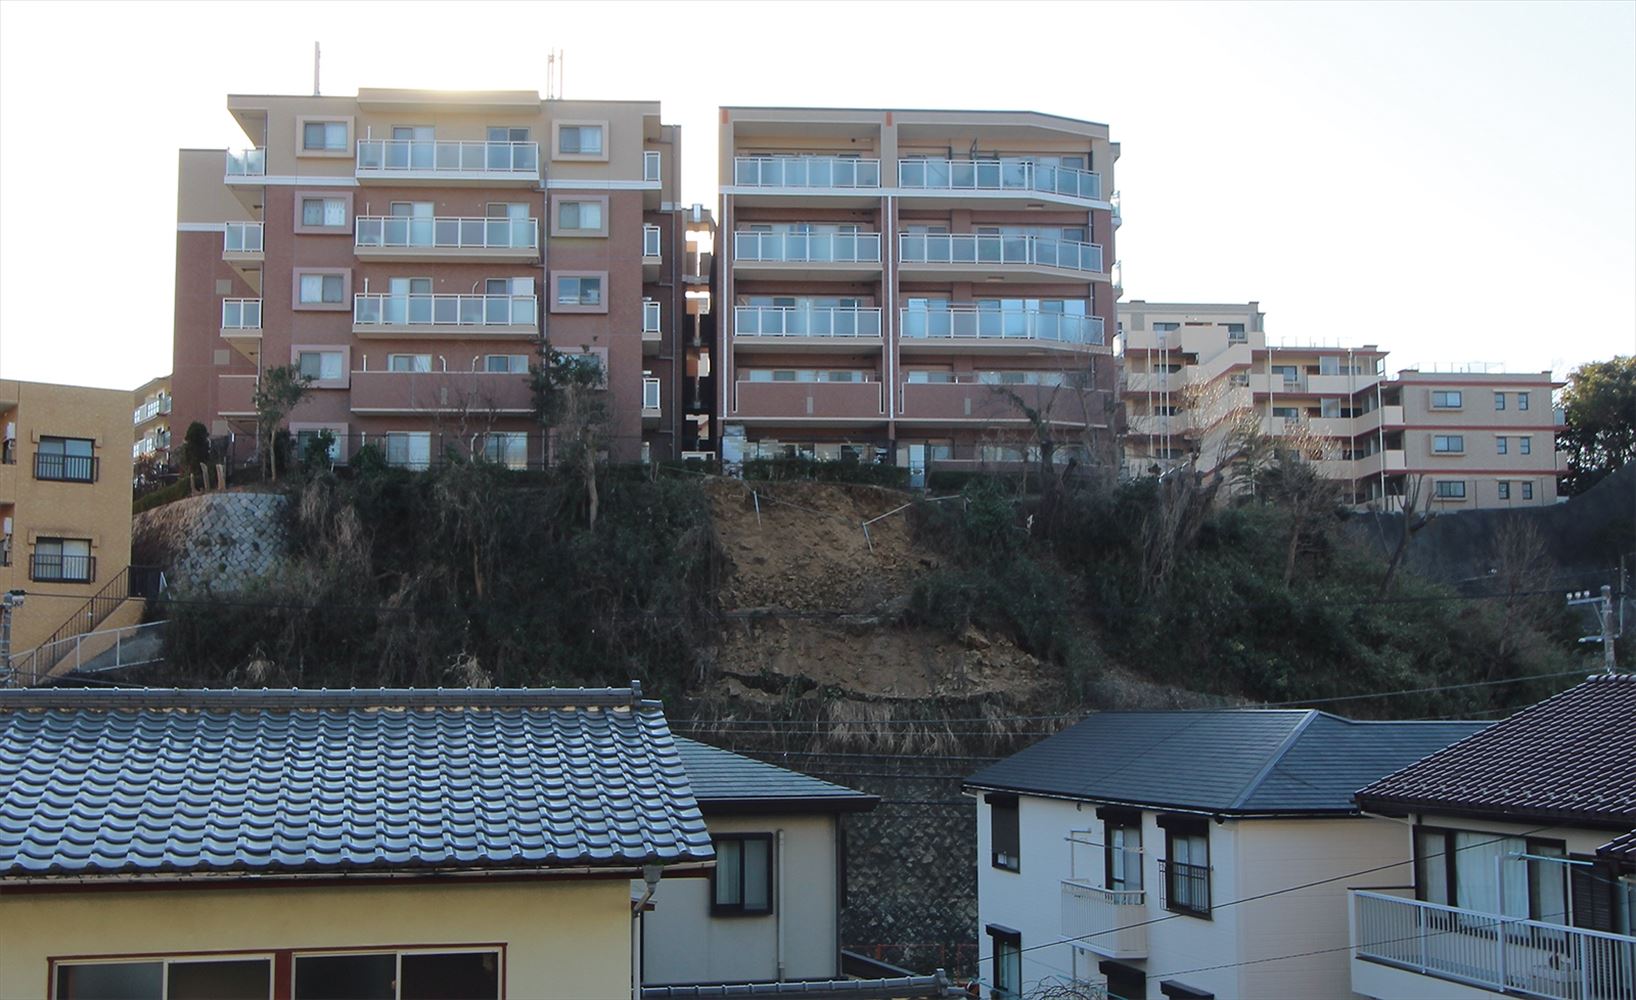 2020年2月5日に敷地内の斜面が崩落して通行人が死亡した神奈川県逗子市内の分譲マンション「ライオンズグローベル逗子の丘」。60トン以上の土砂が崩れた。写真は事故翌日の様子（写真：日経クロステック）